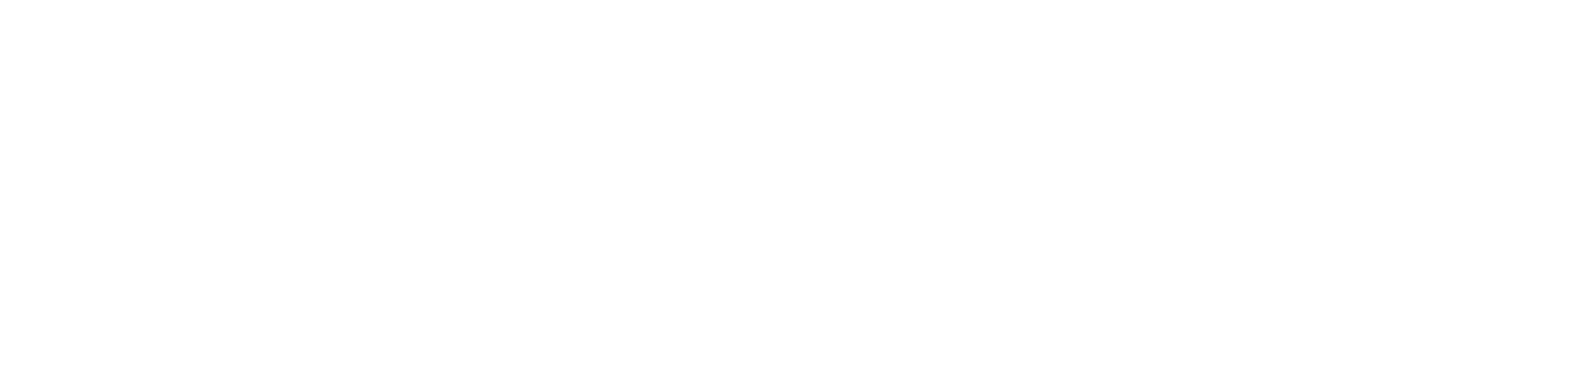 AmTrust Financial Services
 logo large for dark backgrounds (transparent PNG)